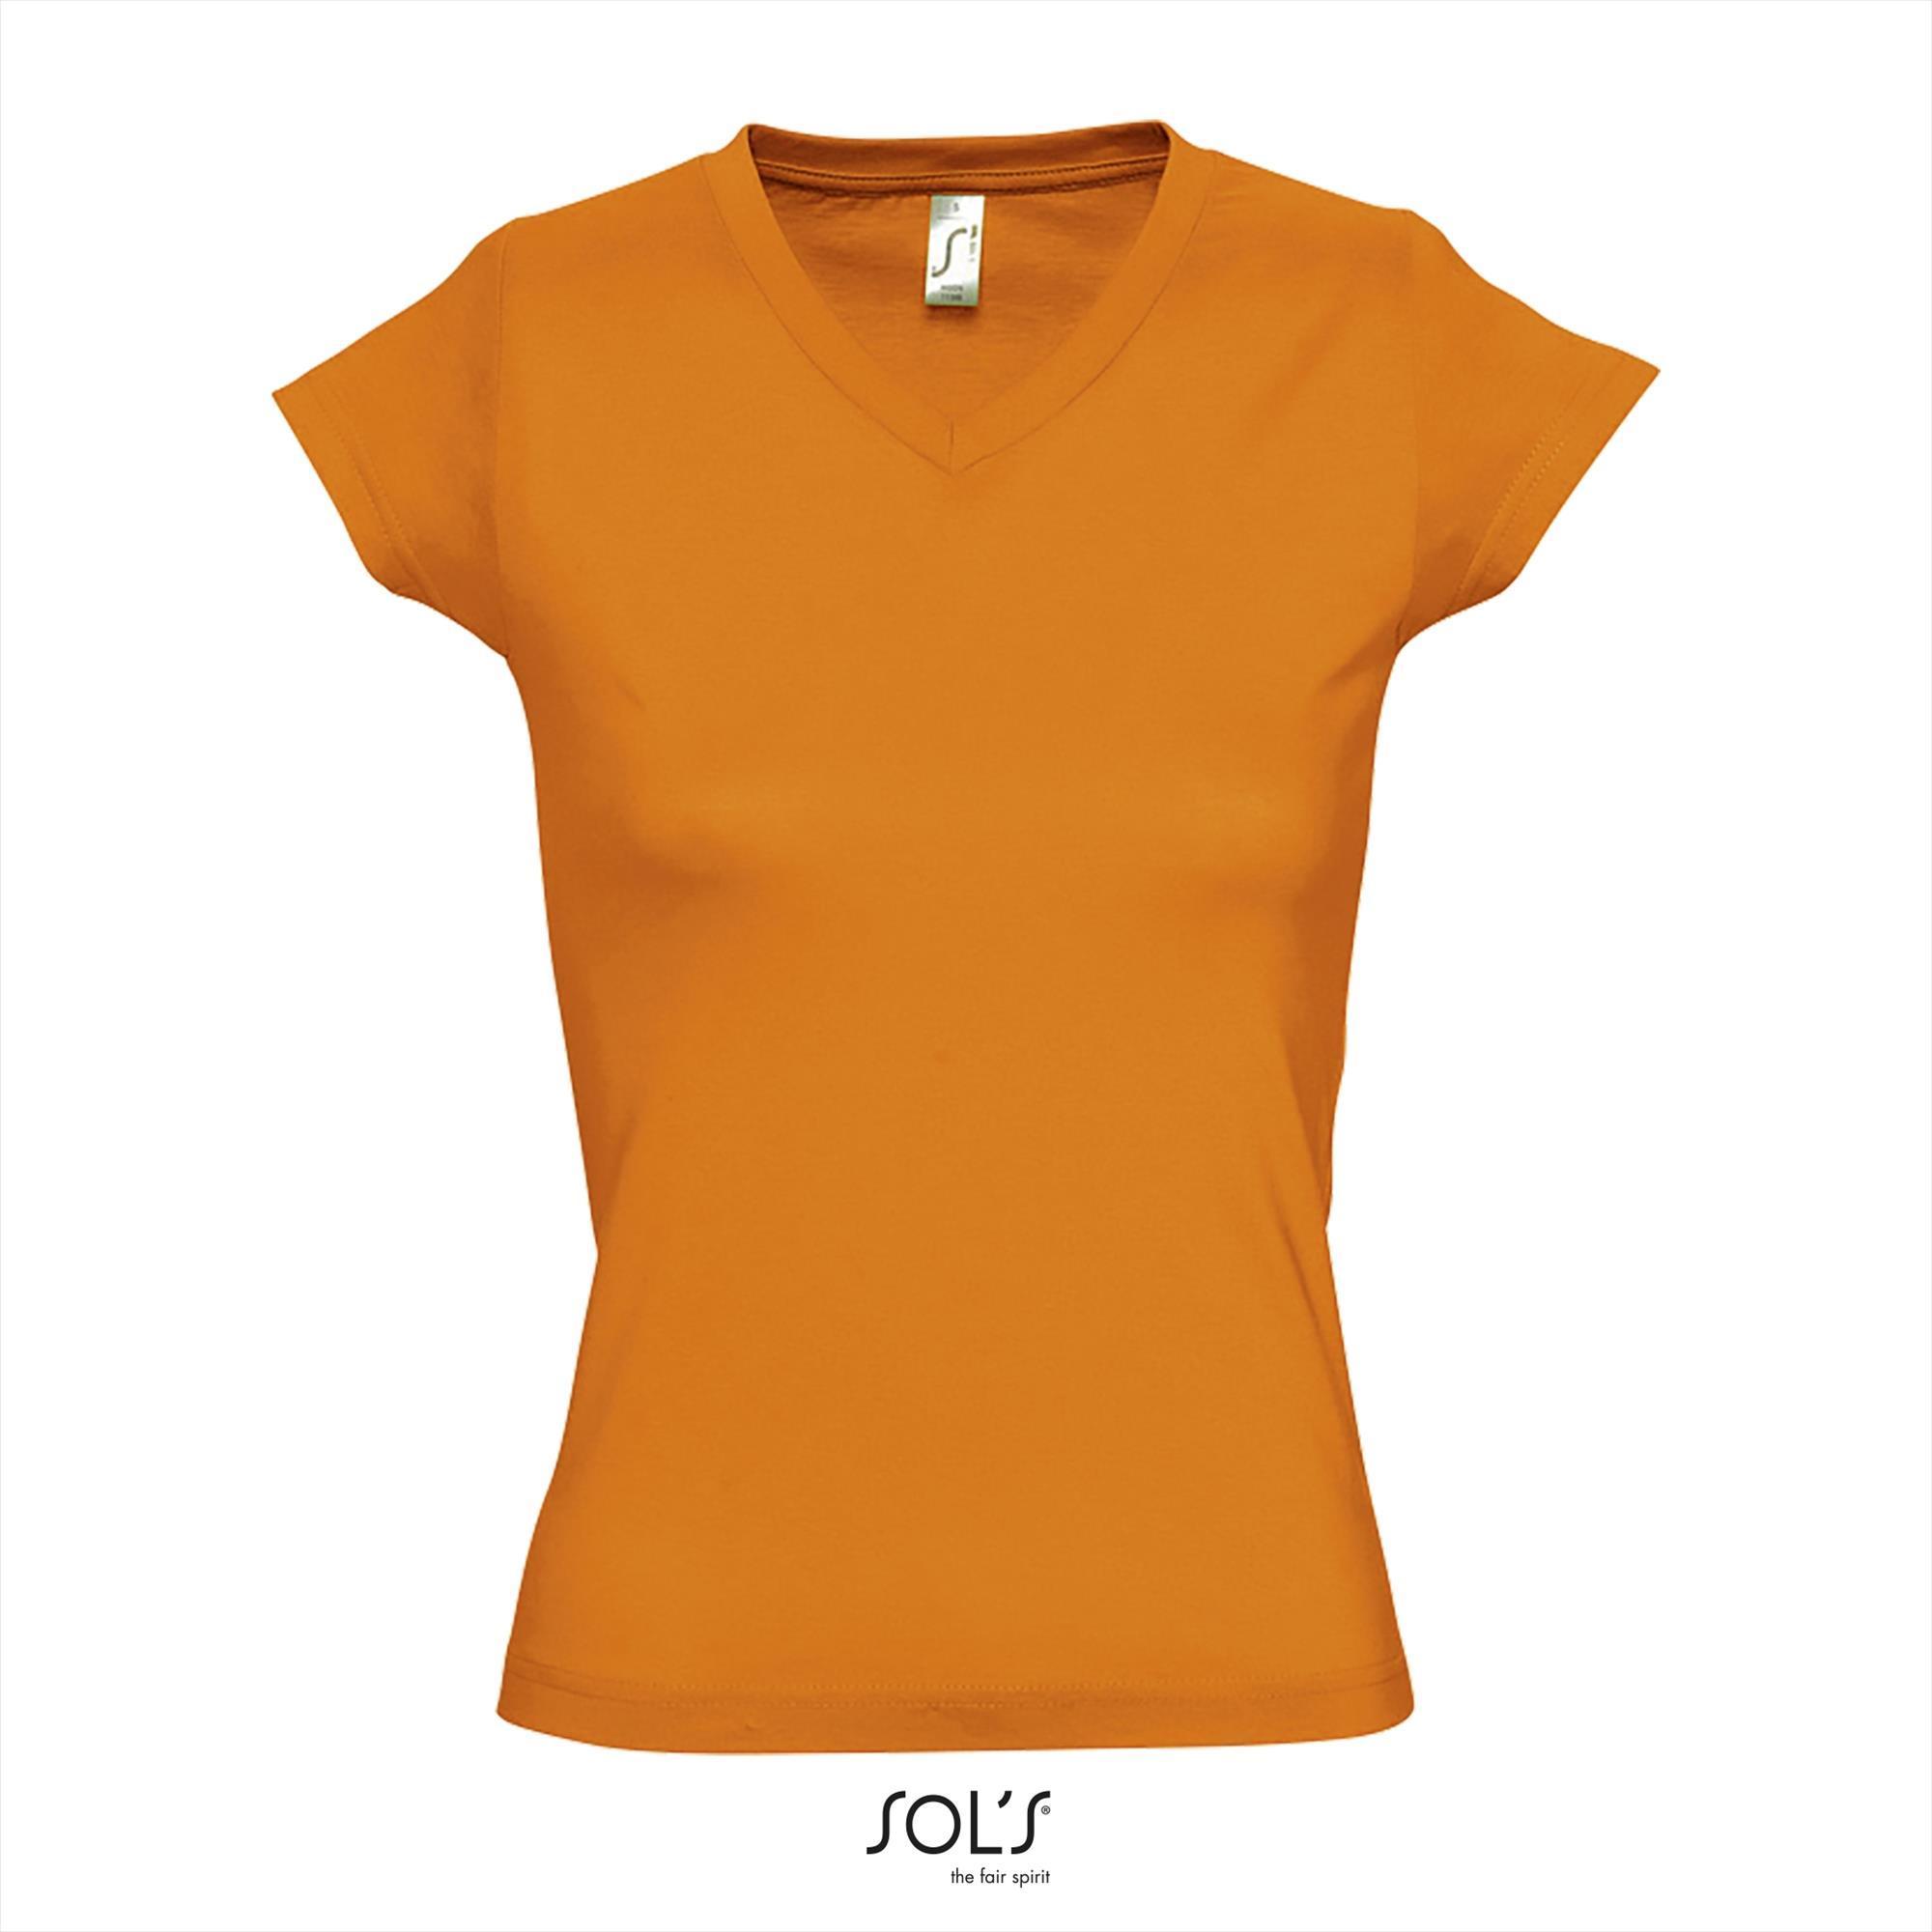 Modieus vrouwelijk dames T-shirt met een diepe V-neck Diepe V-hals T-shirt oranje shirtje EK WK voetballen Nederlandse oranje kleur